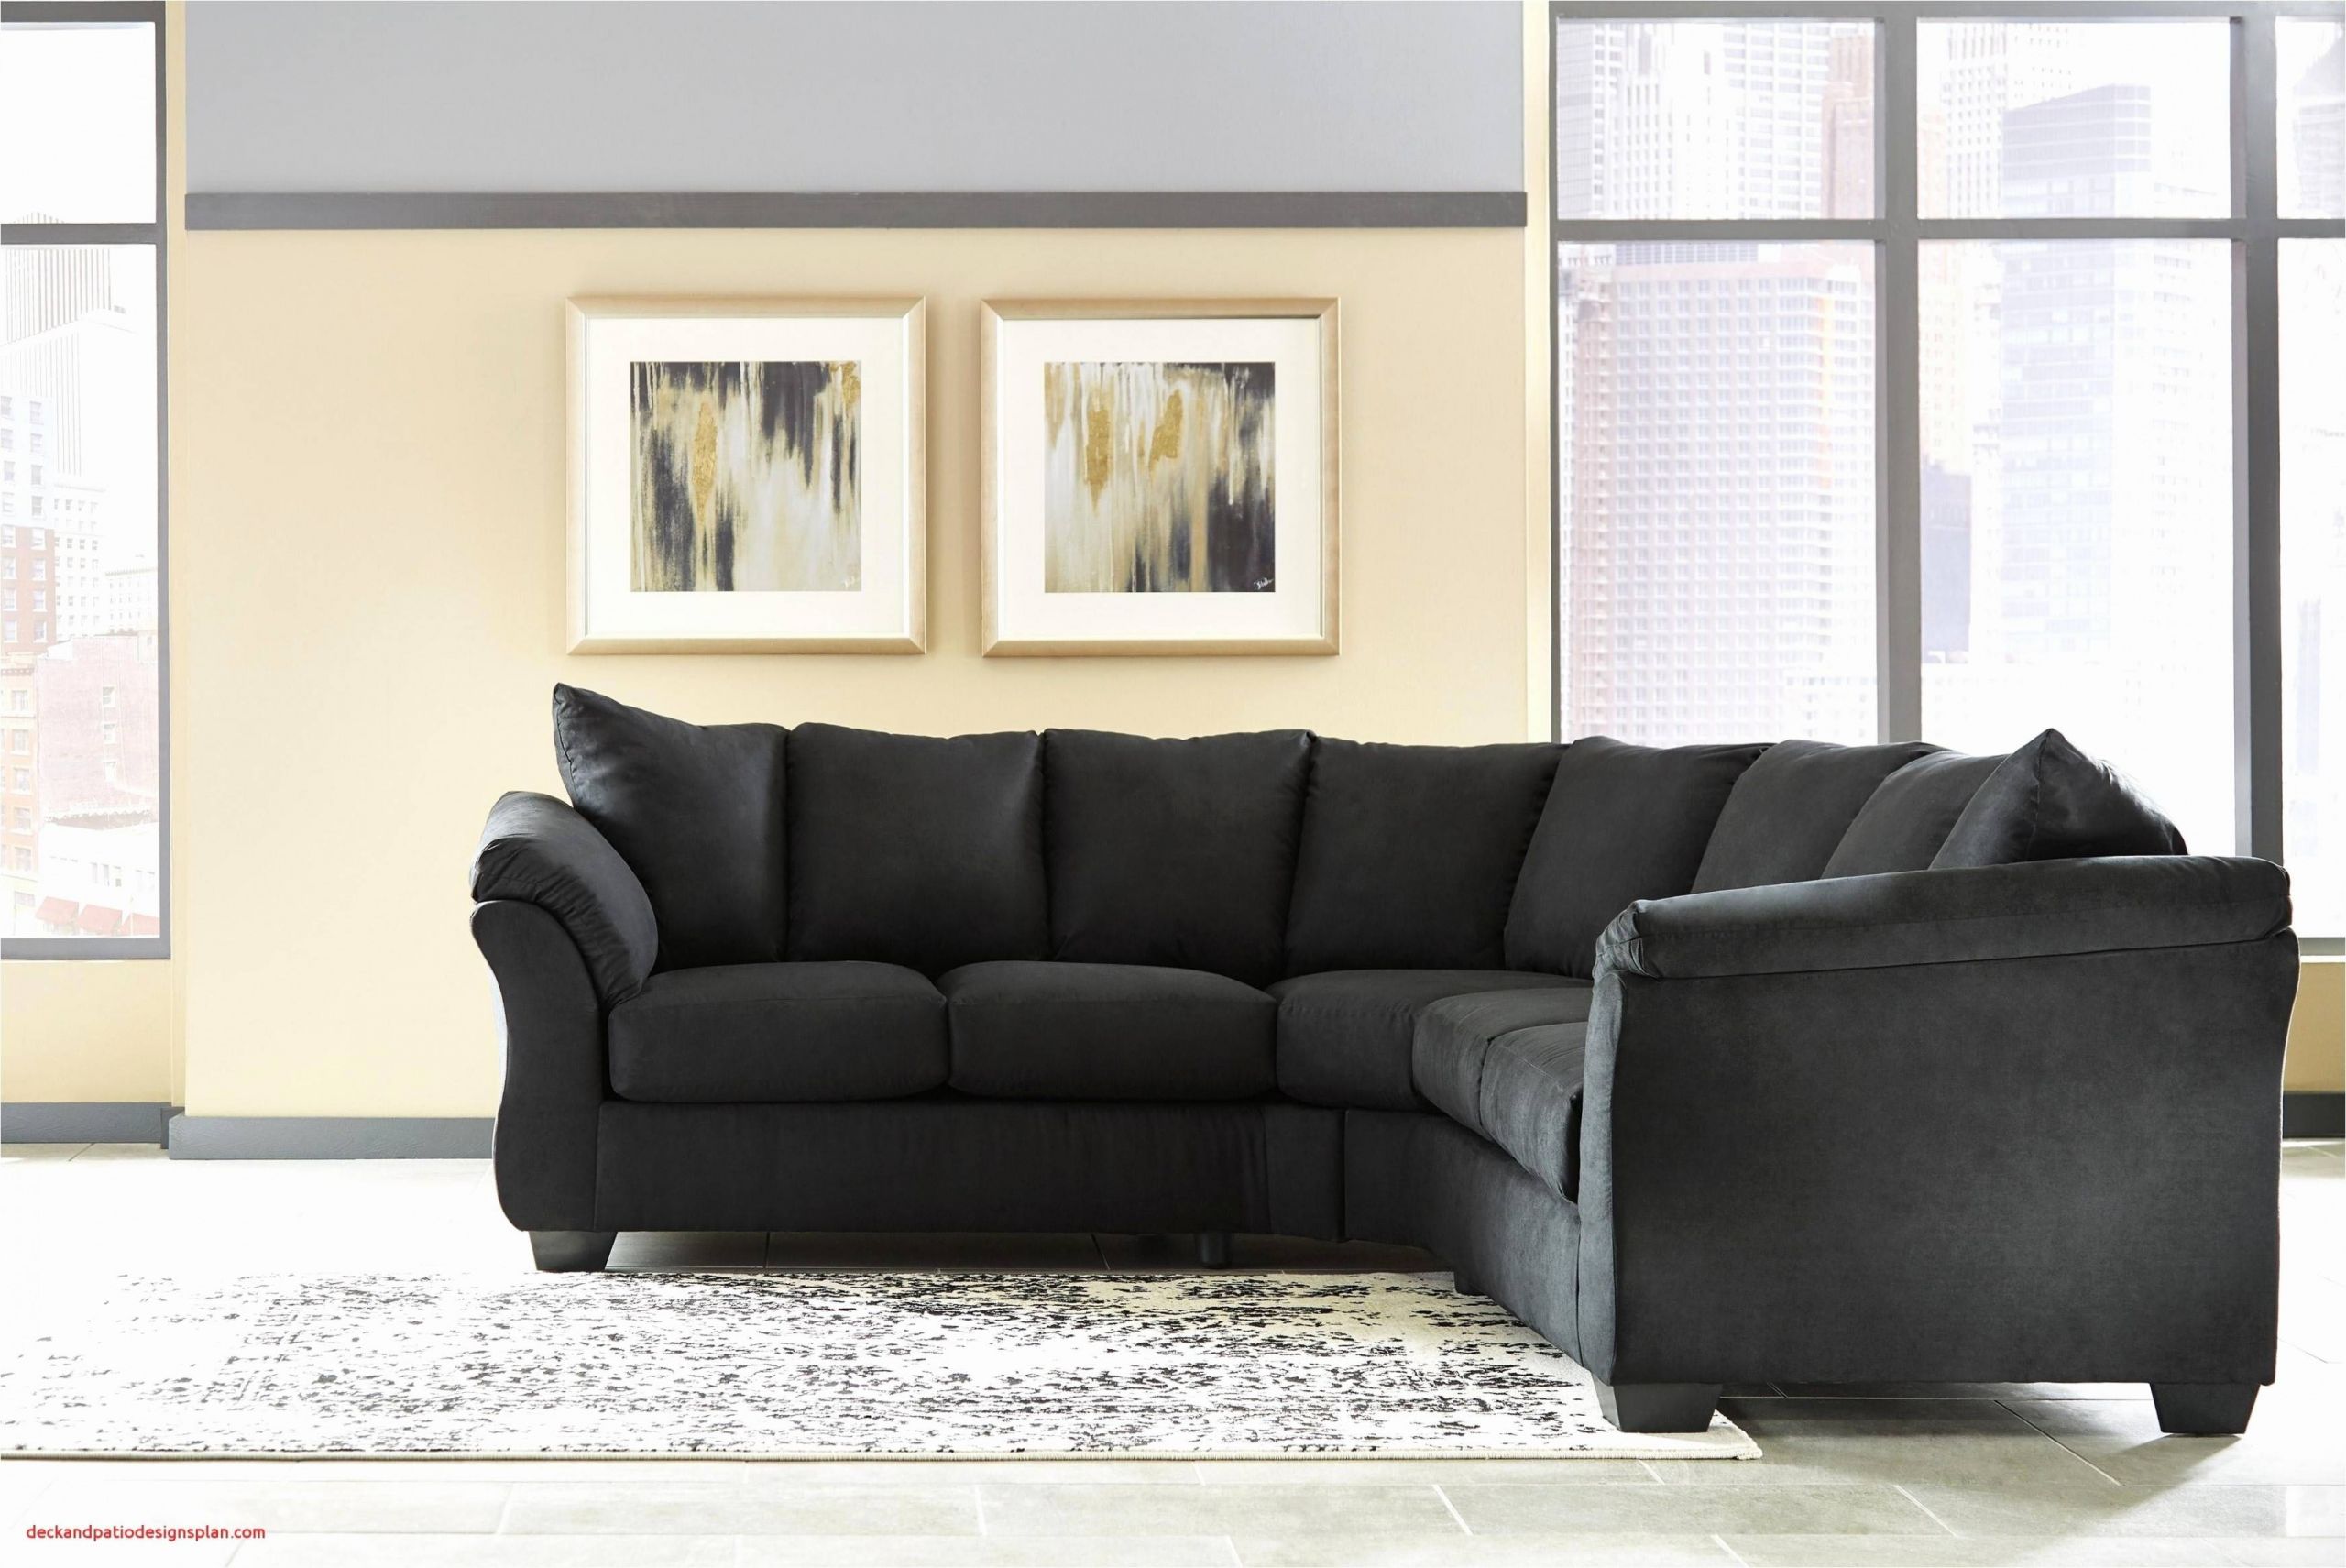 gemutliches wohnzimmer ideen lovely rosa couch luxus weiche sofas 0d fotos schlafsofa ideen und bilder of gemutliches wohnzimmer ideen